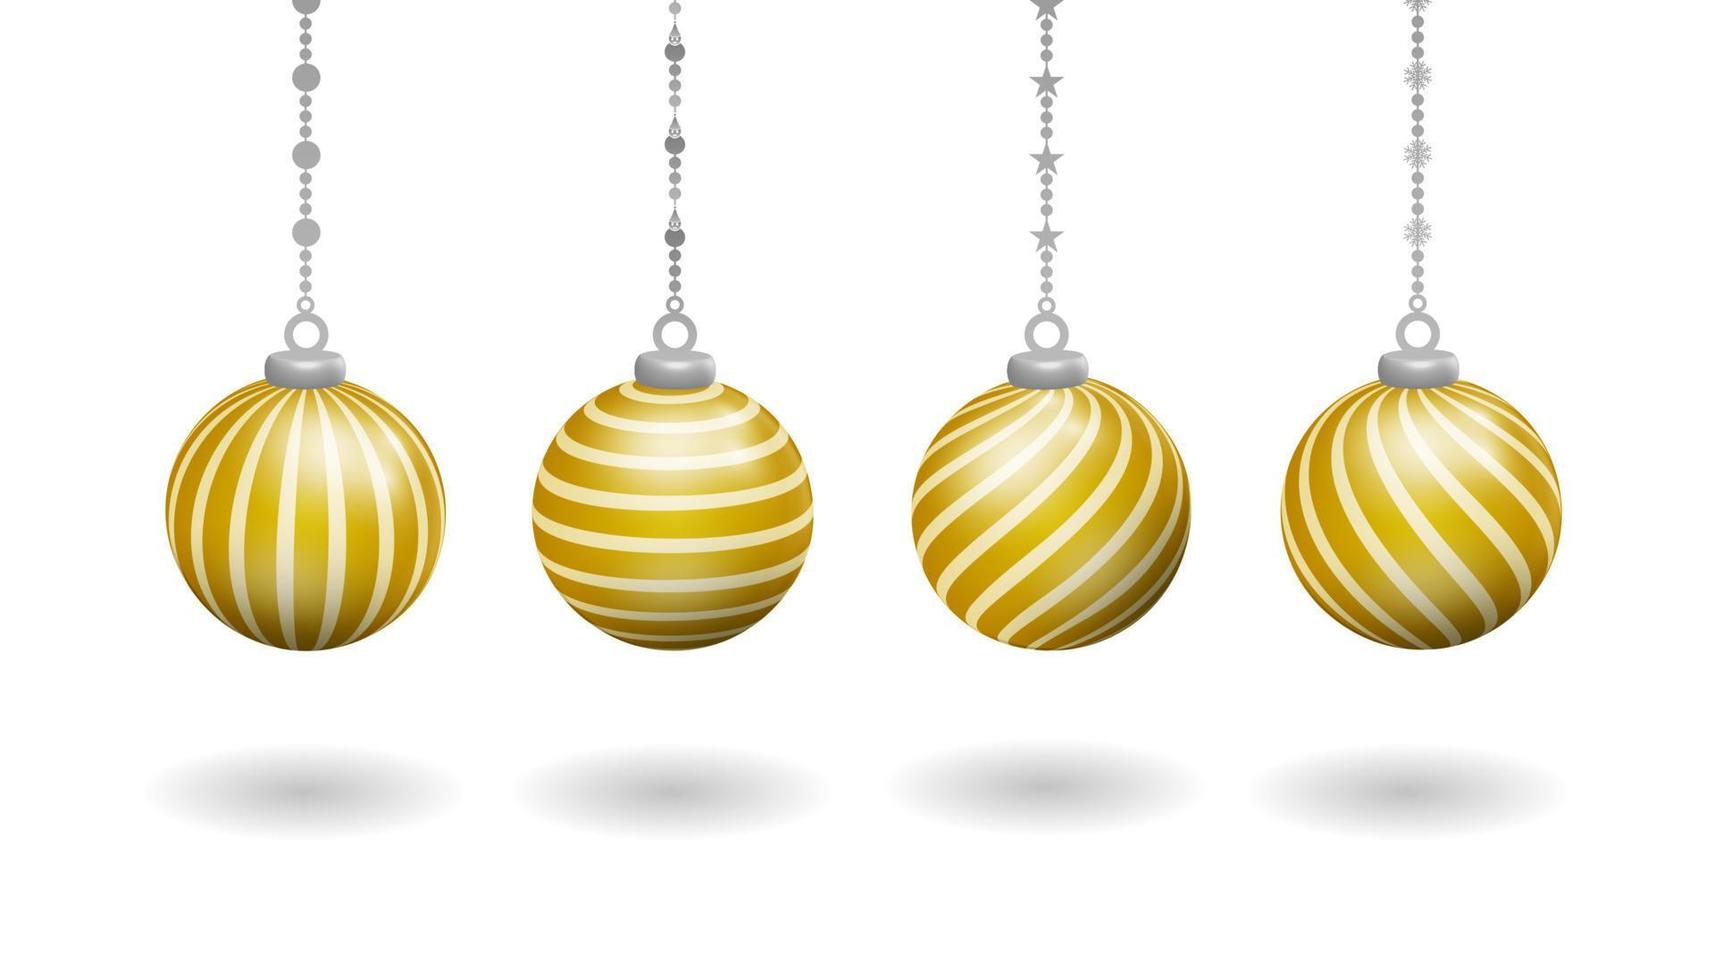 realistisch goud hangende bal Kerstmis decoratie set, met divers draaien lijn patronen vector